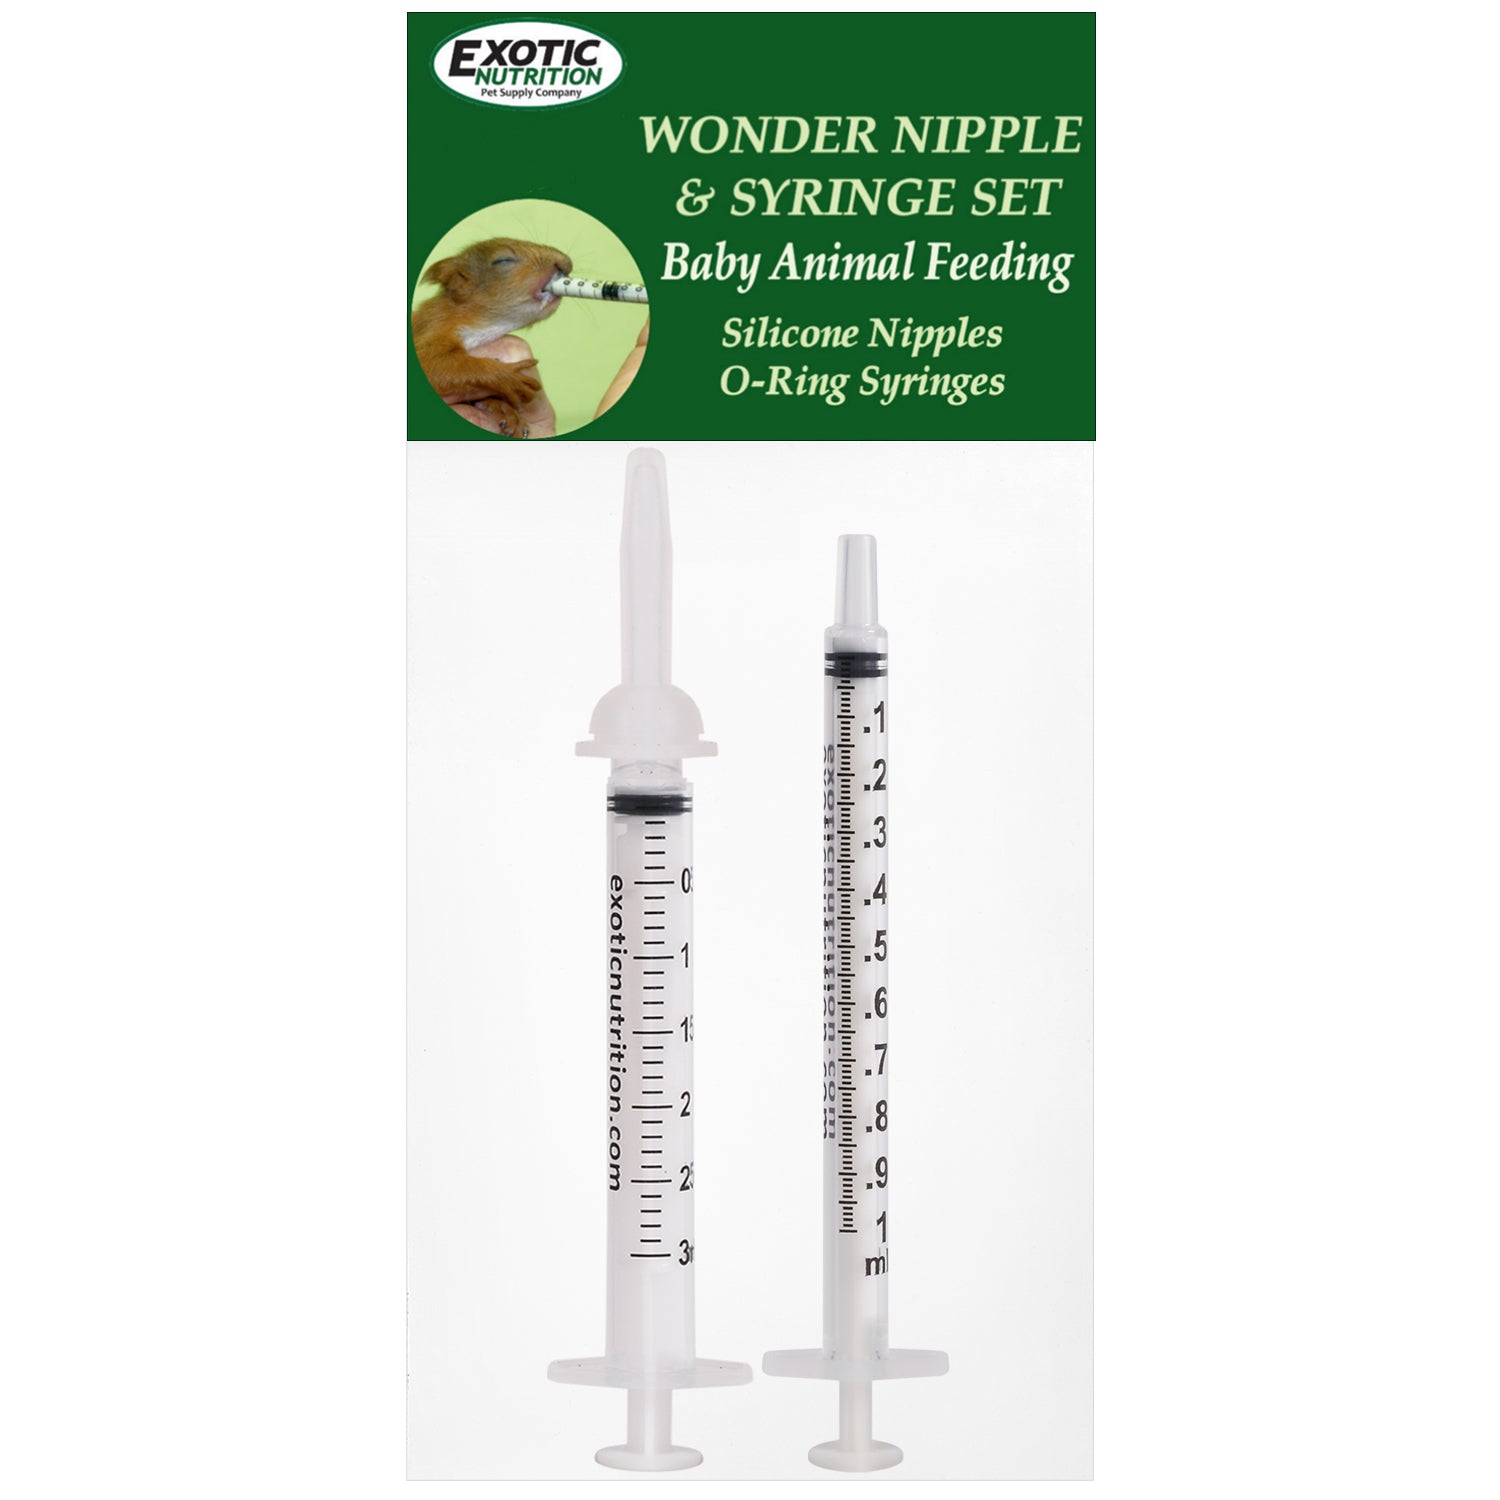 Wonder Nipple & Syringe Set